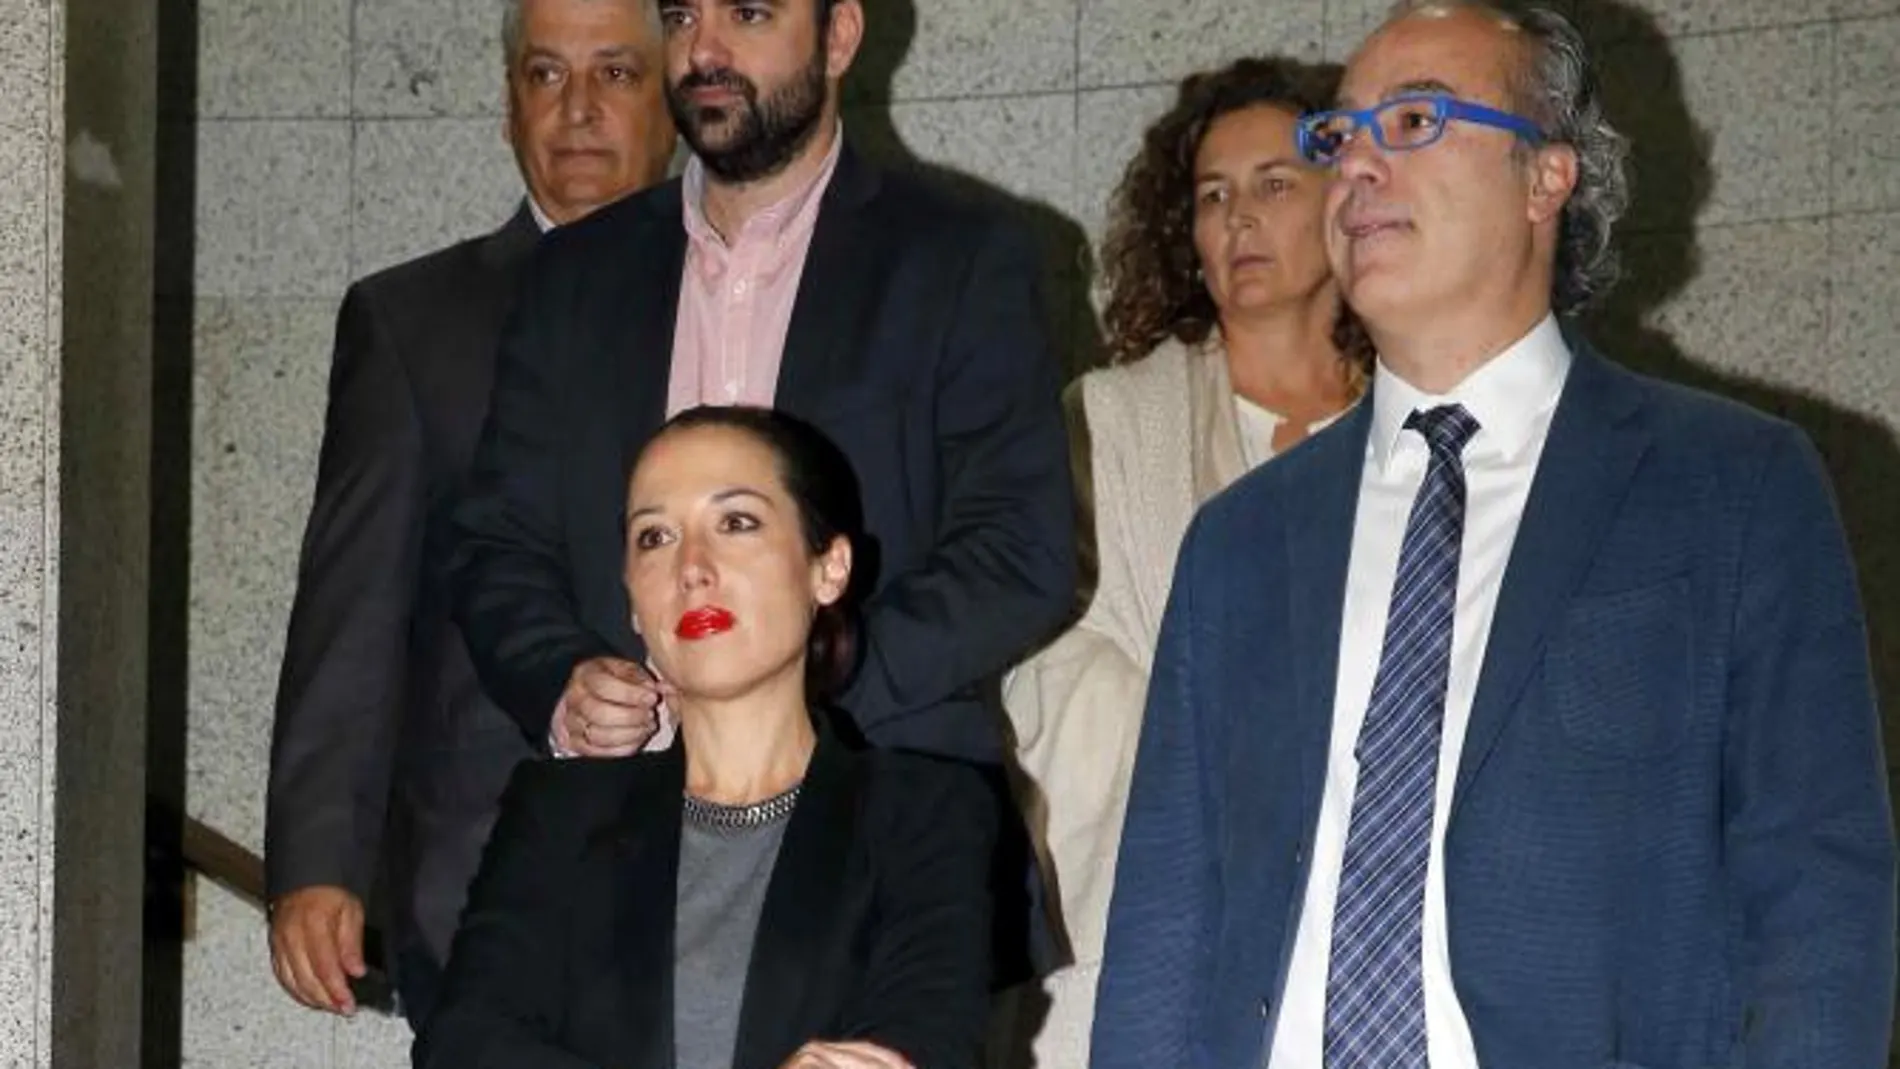 La vicepresidenta del Gobierno de Canarias, Patricia Hernández, y los consejeros del PSOE tras abandonar la reunión del Consejo de Gobierno